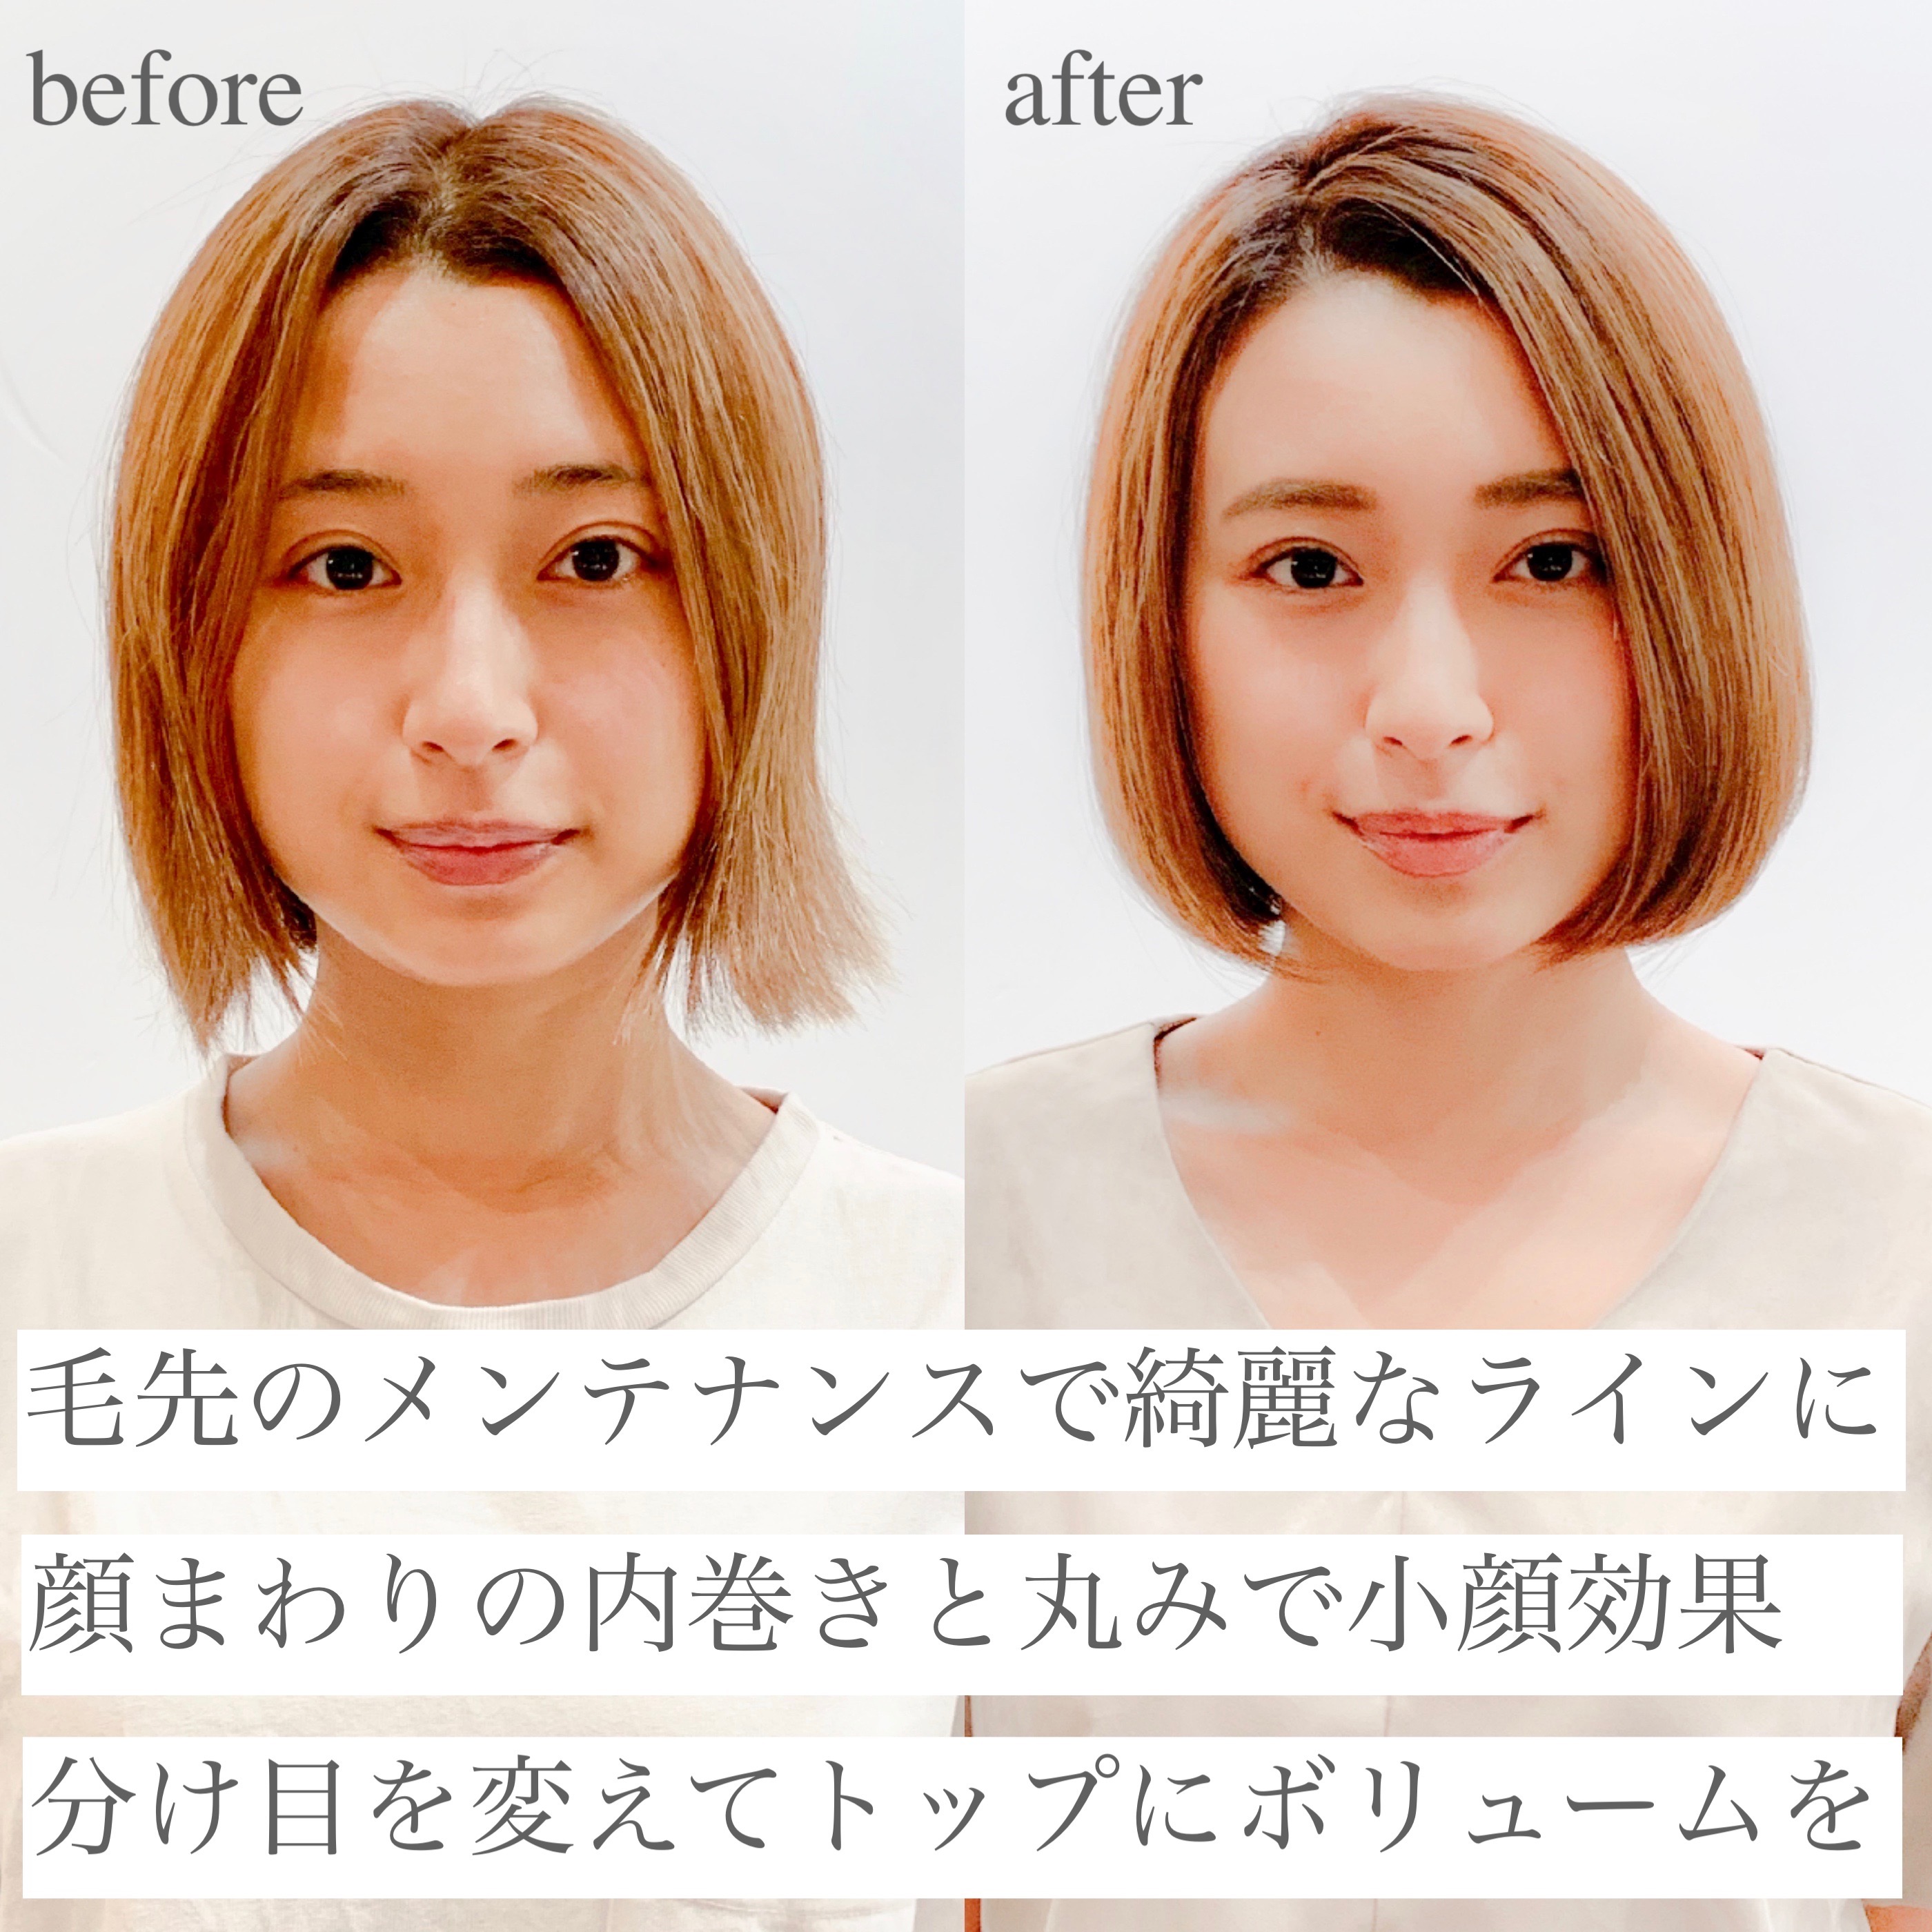 22年秋 大人ボブを 前髪あり 前髪なし の変化で 今の自分に似合う髪型に 似合わせカットが上手い東京の美容師 美容室minx銀座 蛭田のブログ